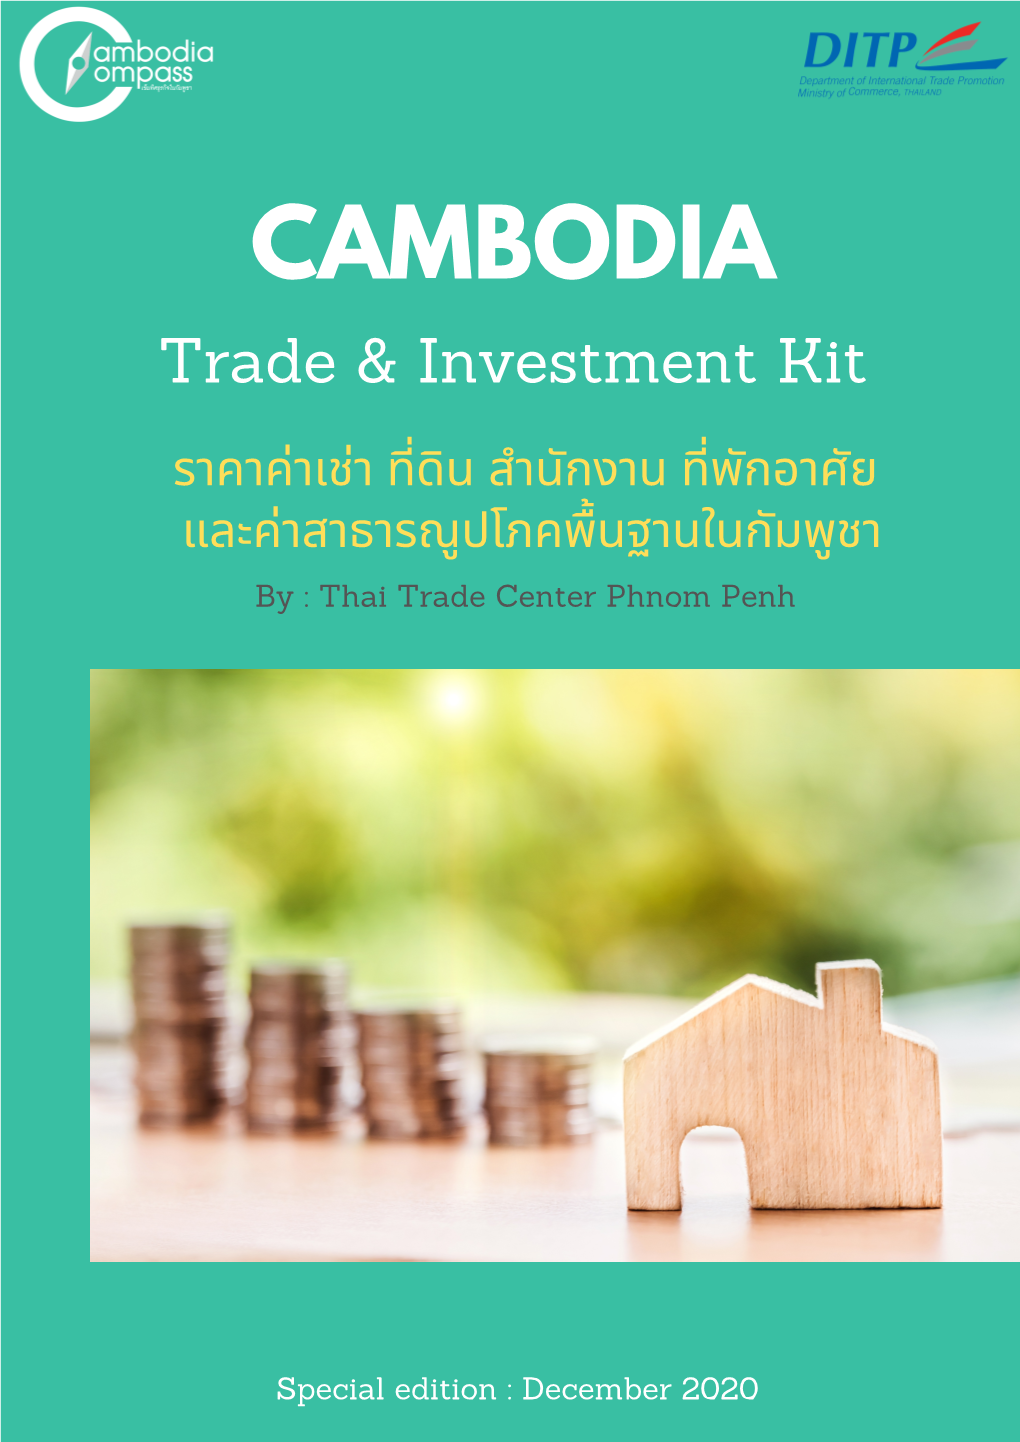 Cambodia Trade & Investment